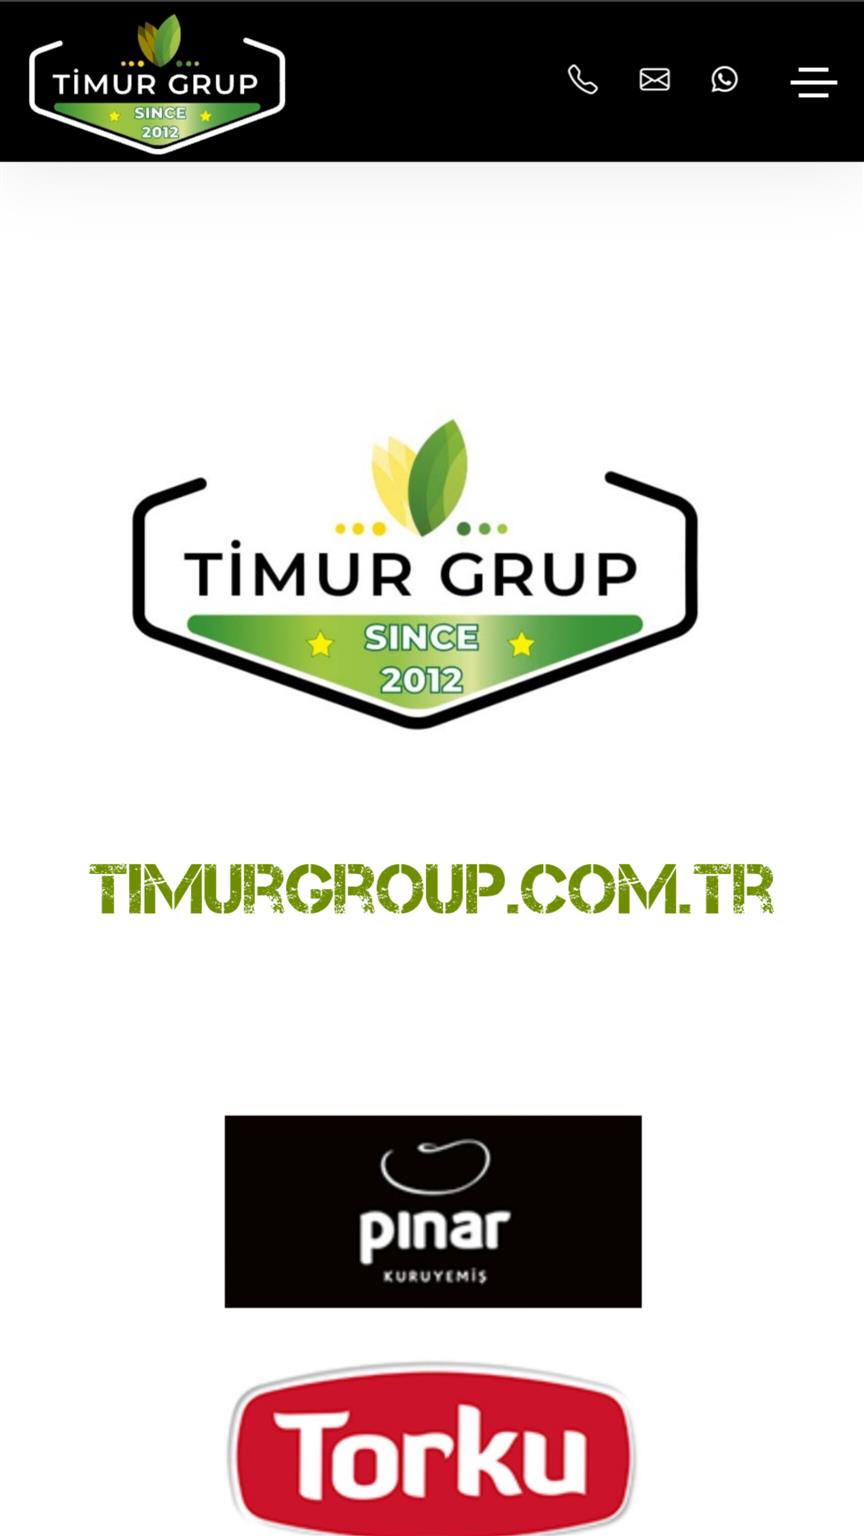 Timur Group